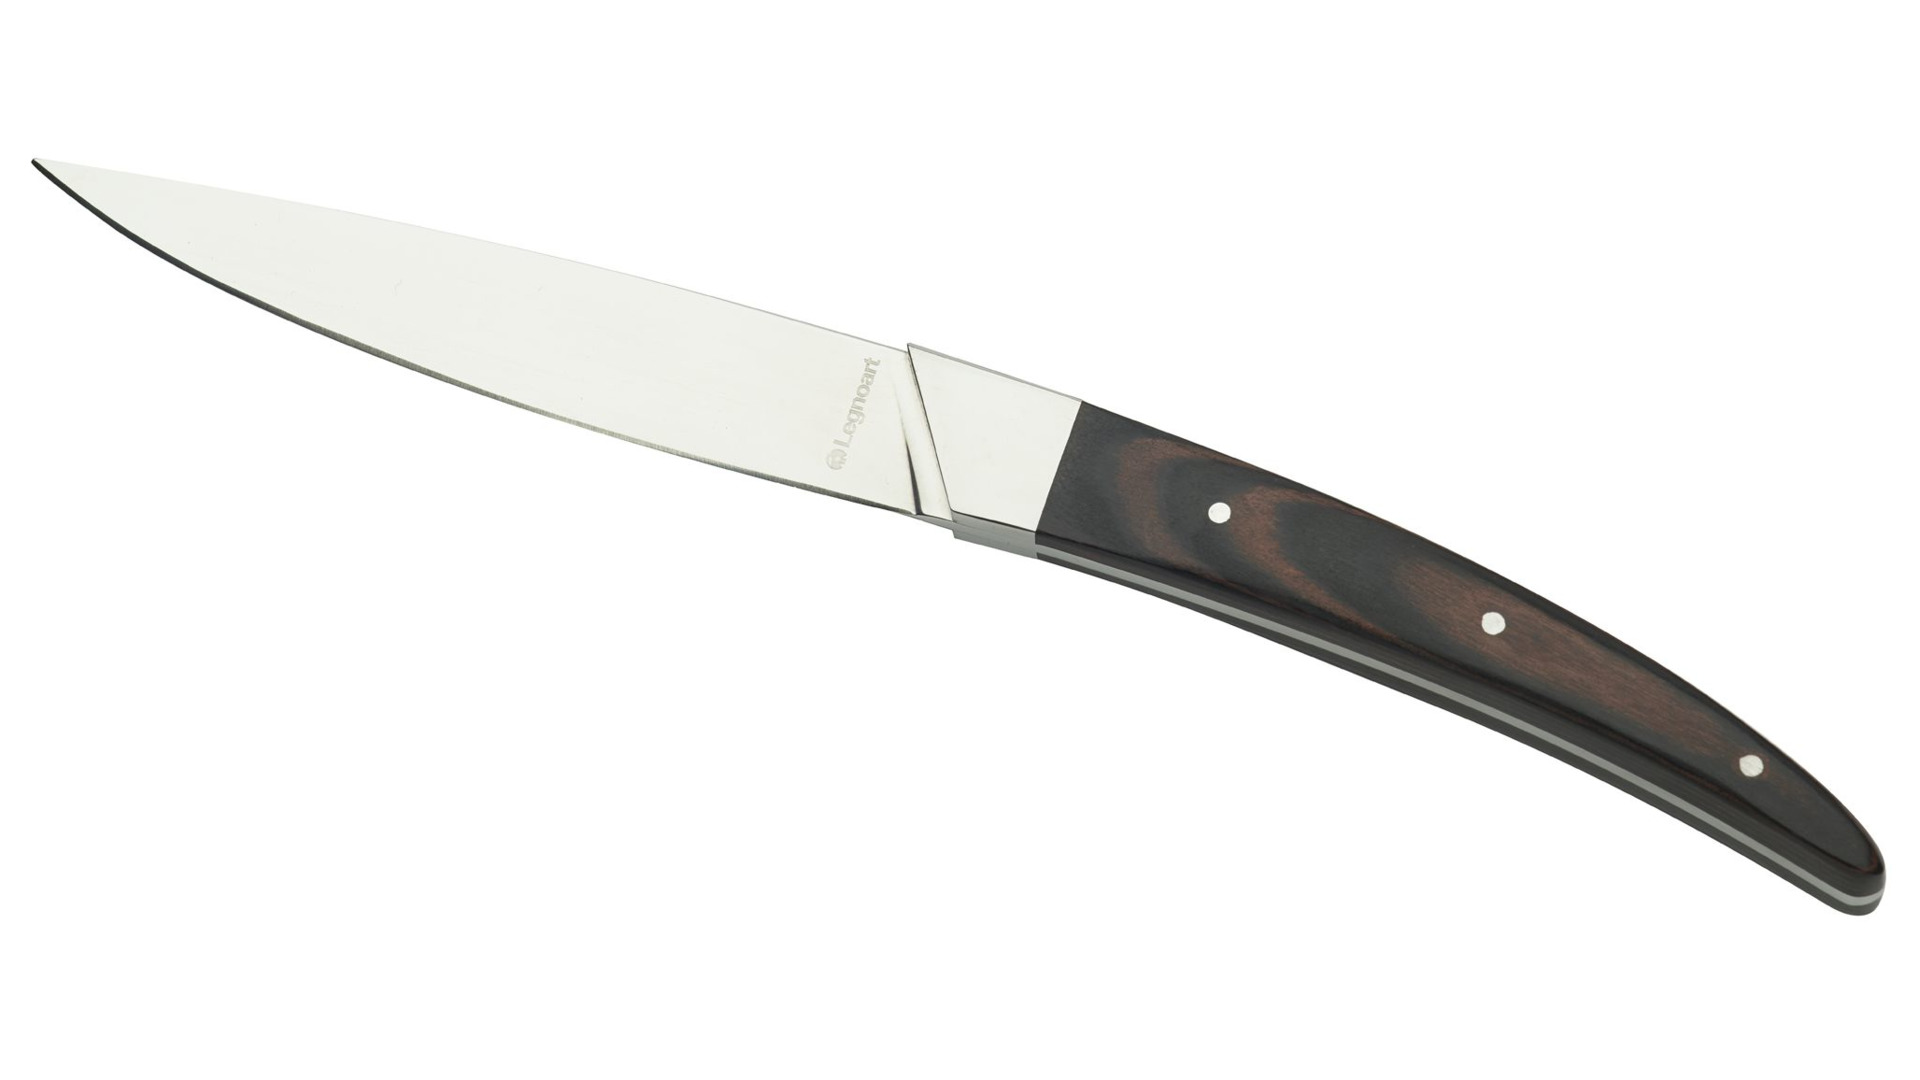 Набор ножей для стейка Legnoart Porteouse , 4 шт, ручка из темного дерева, п/к